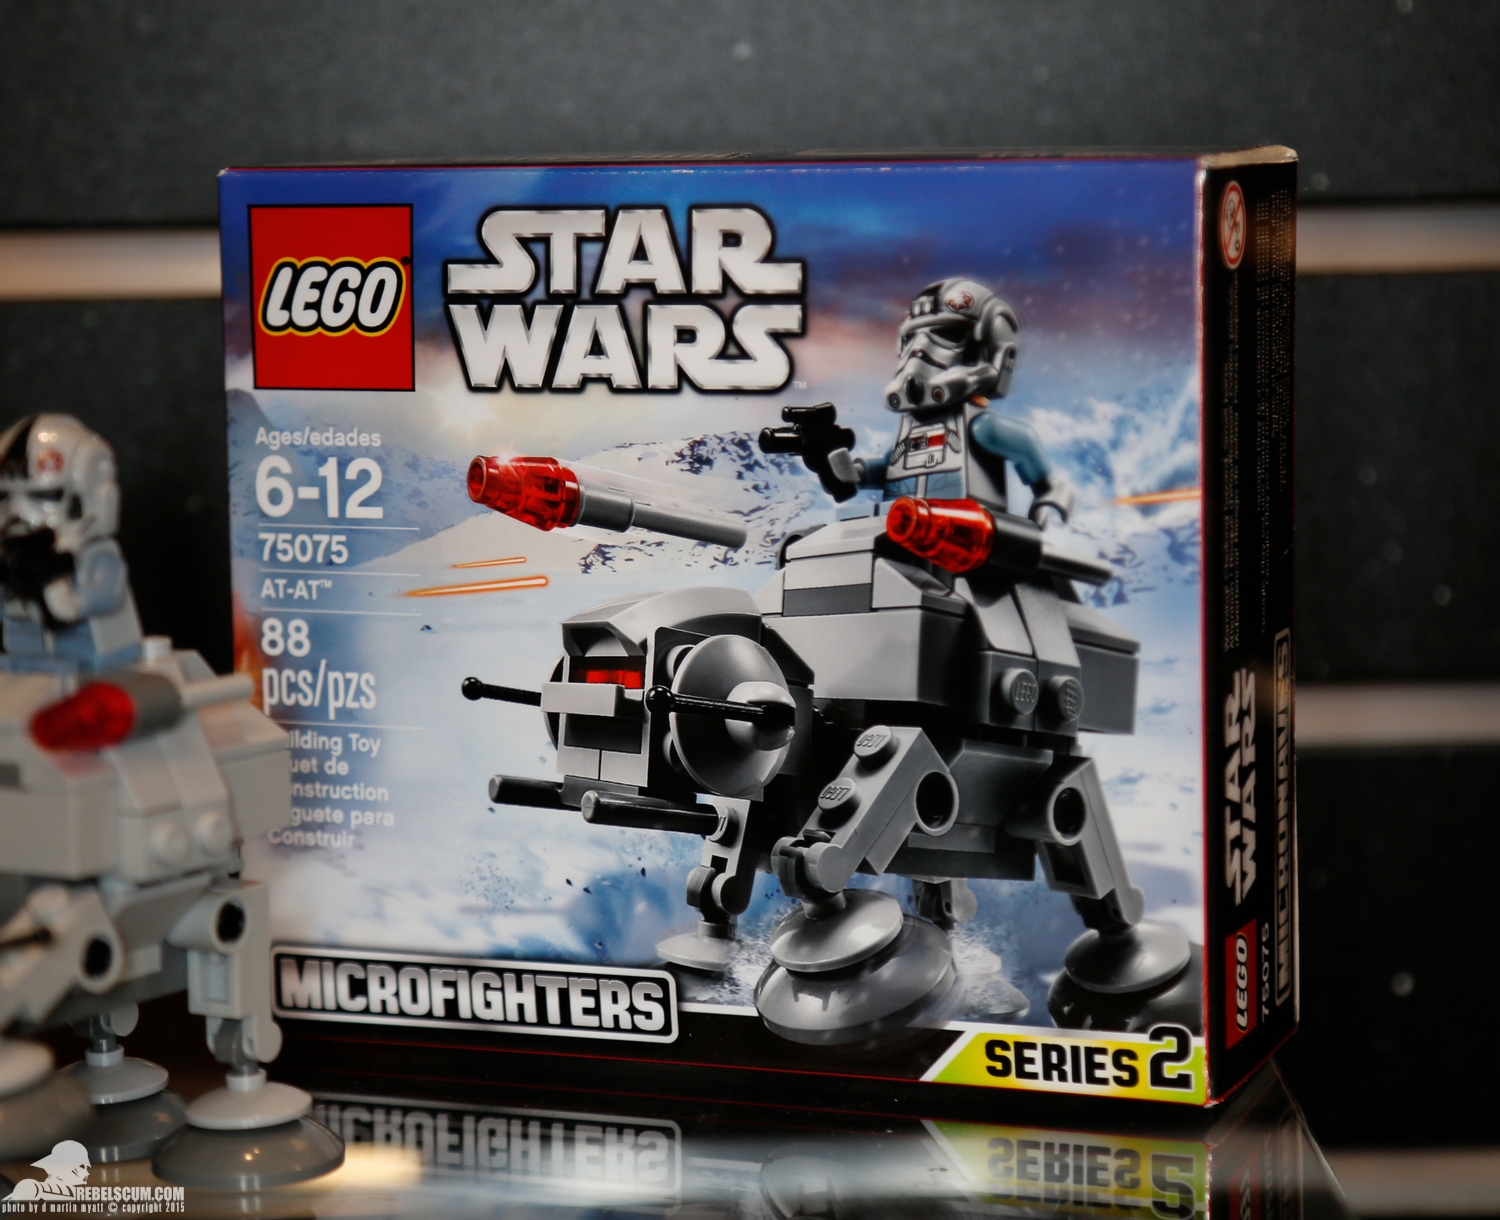 2015-International-Toy-Fair-Star-Wars-Lego-017.jpg